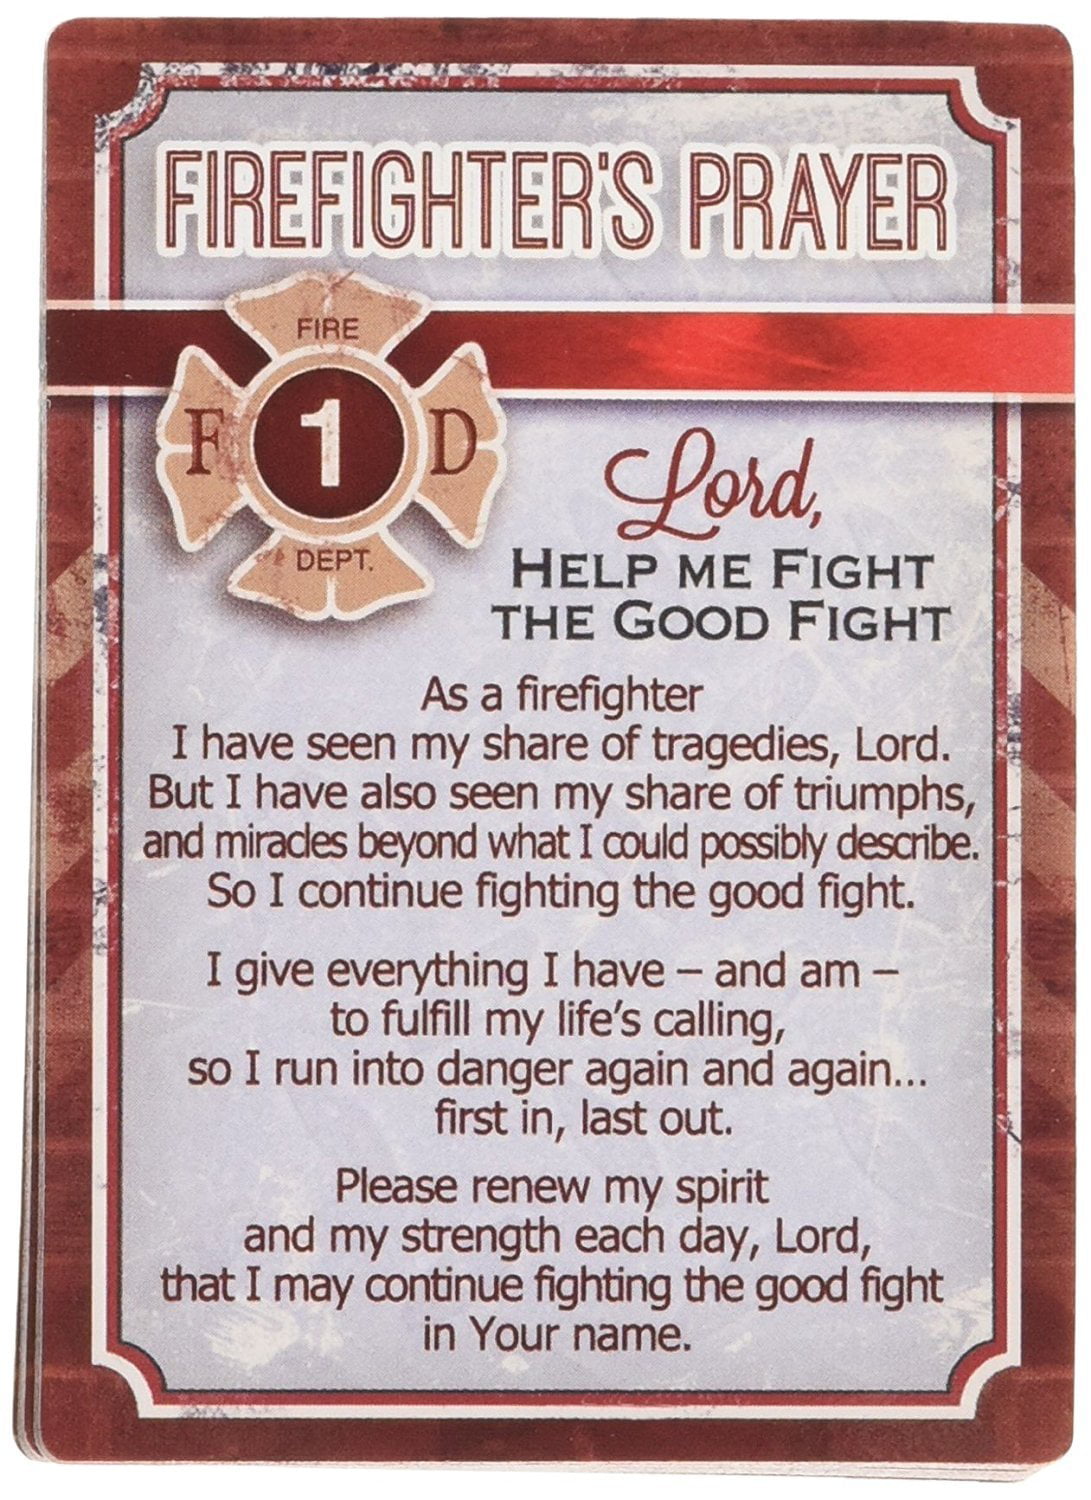 Firefighter prayer pen wraps